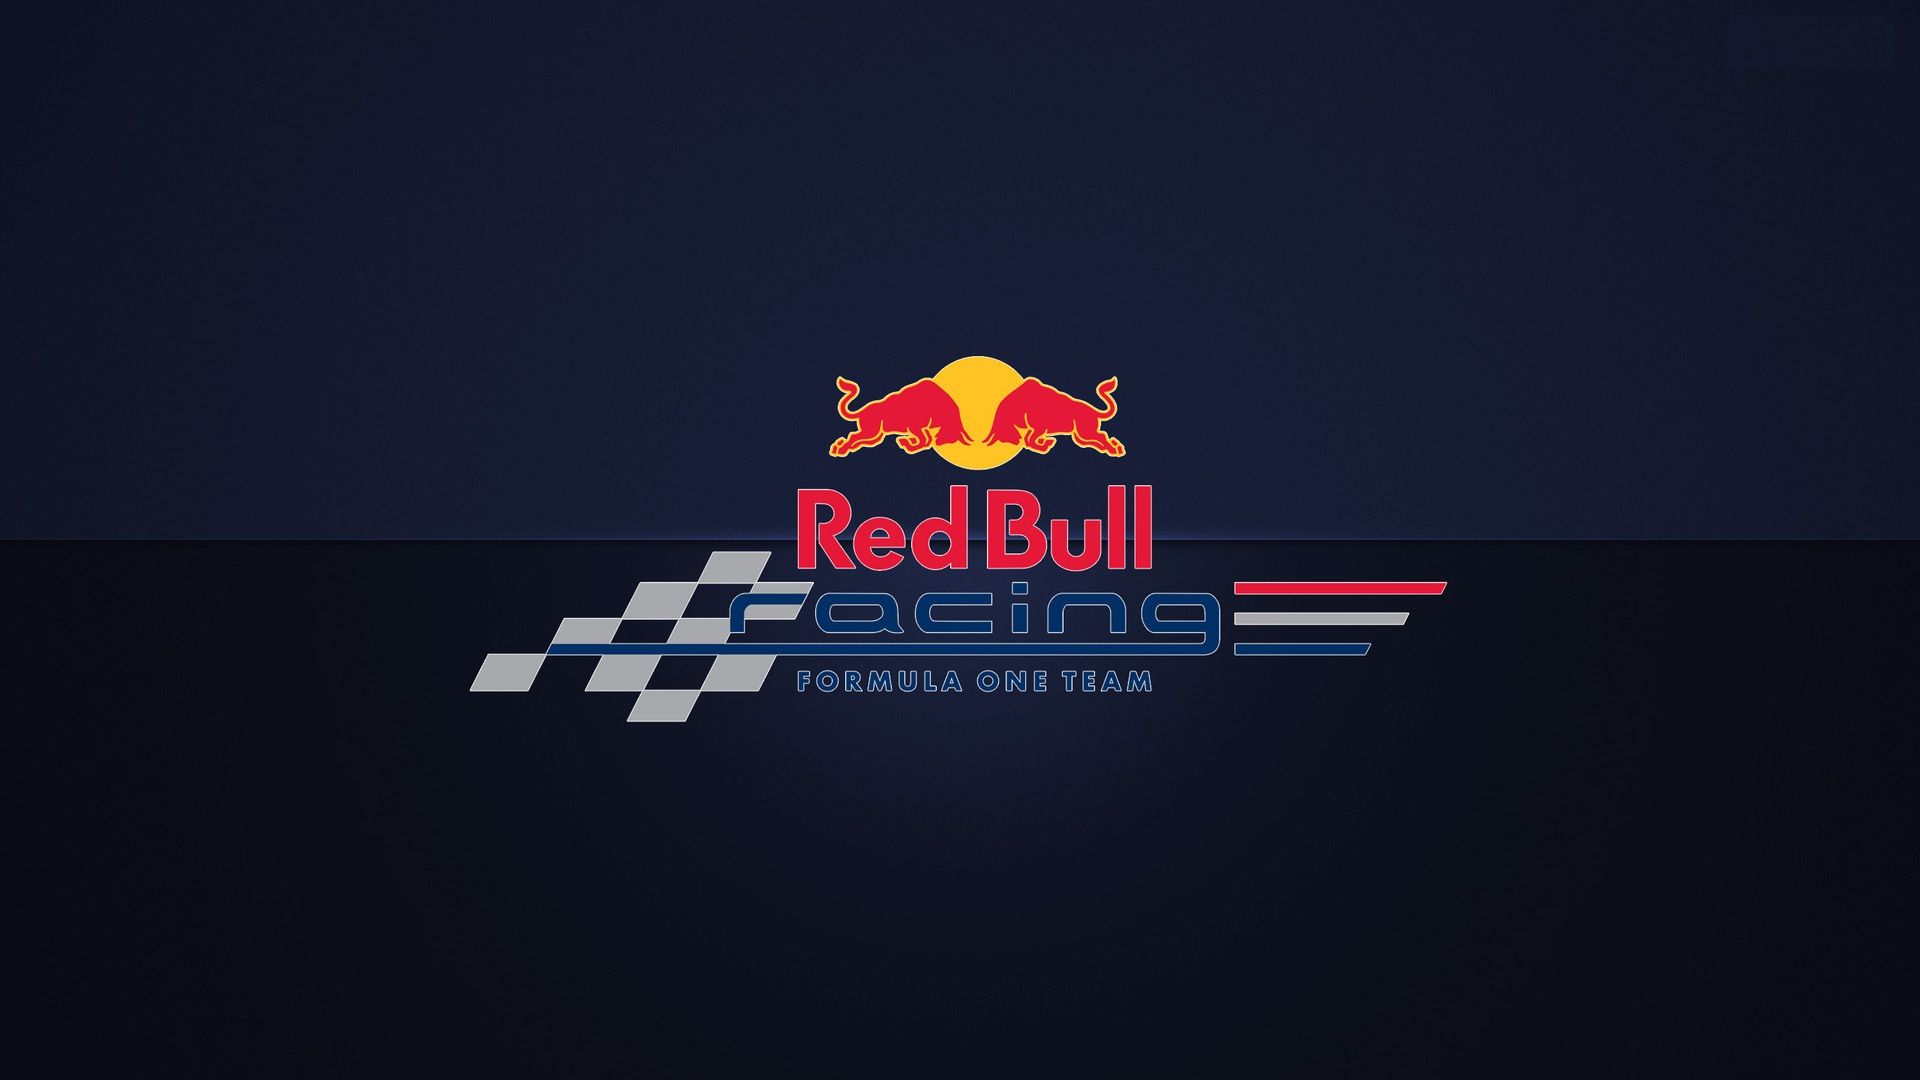 72+ Red Bull Racing Wallpaper on WallpaperSafari